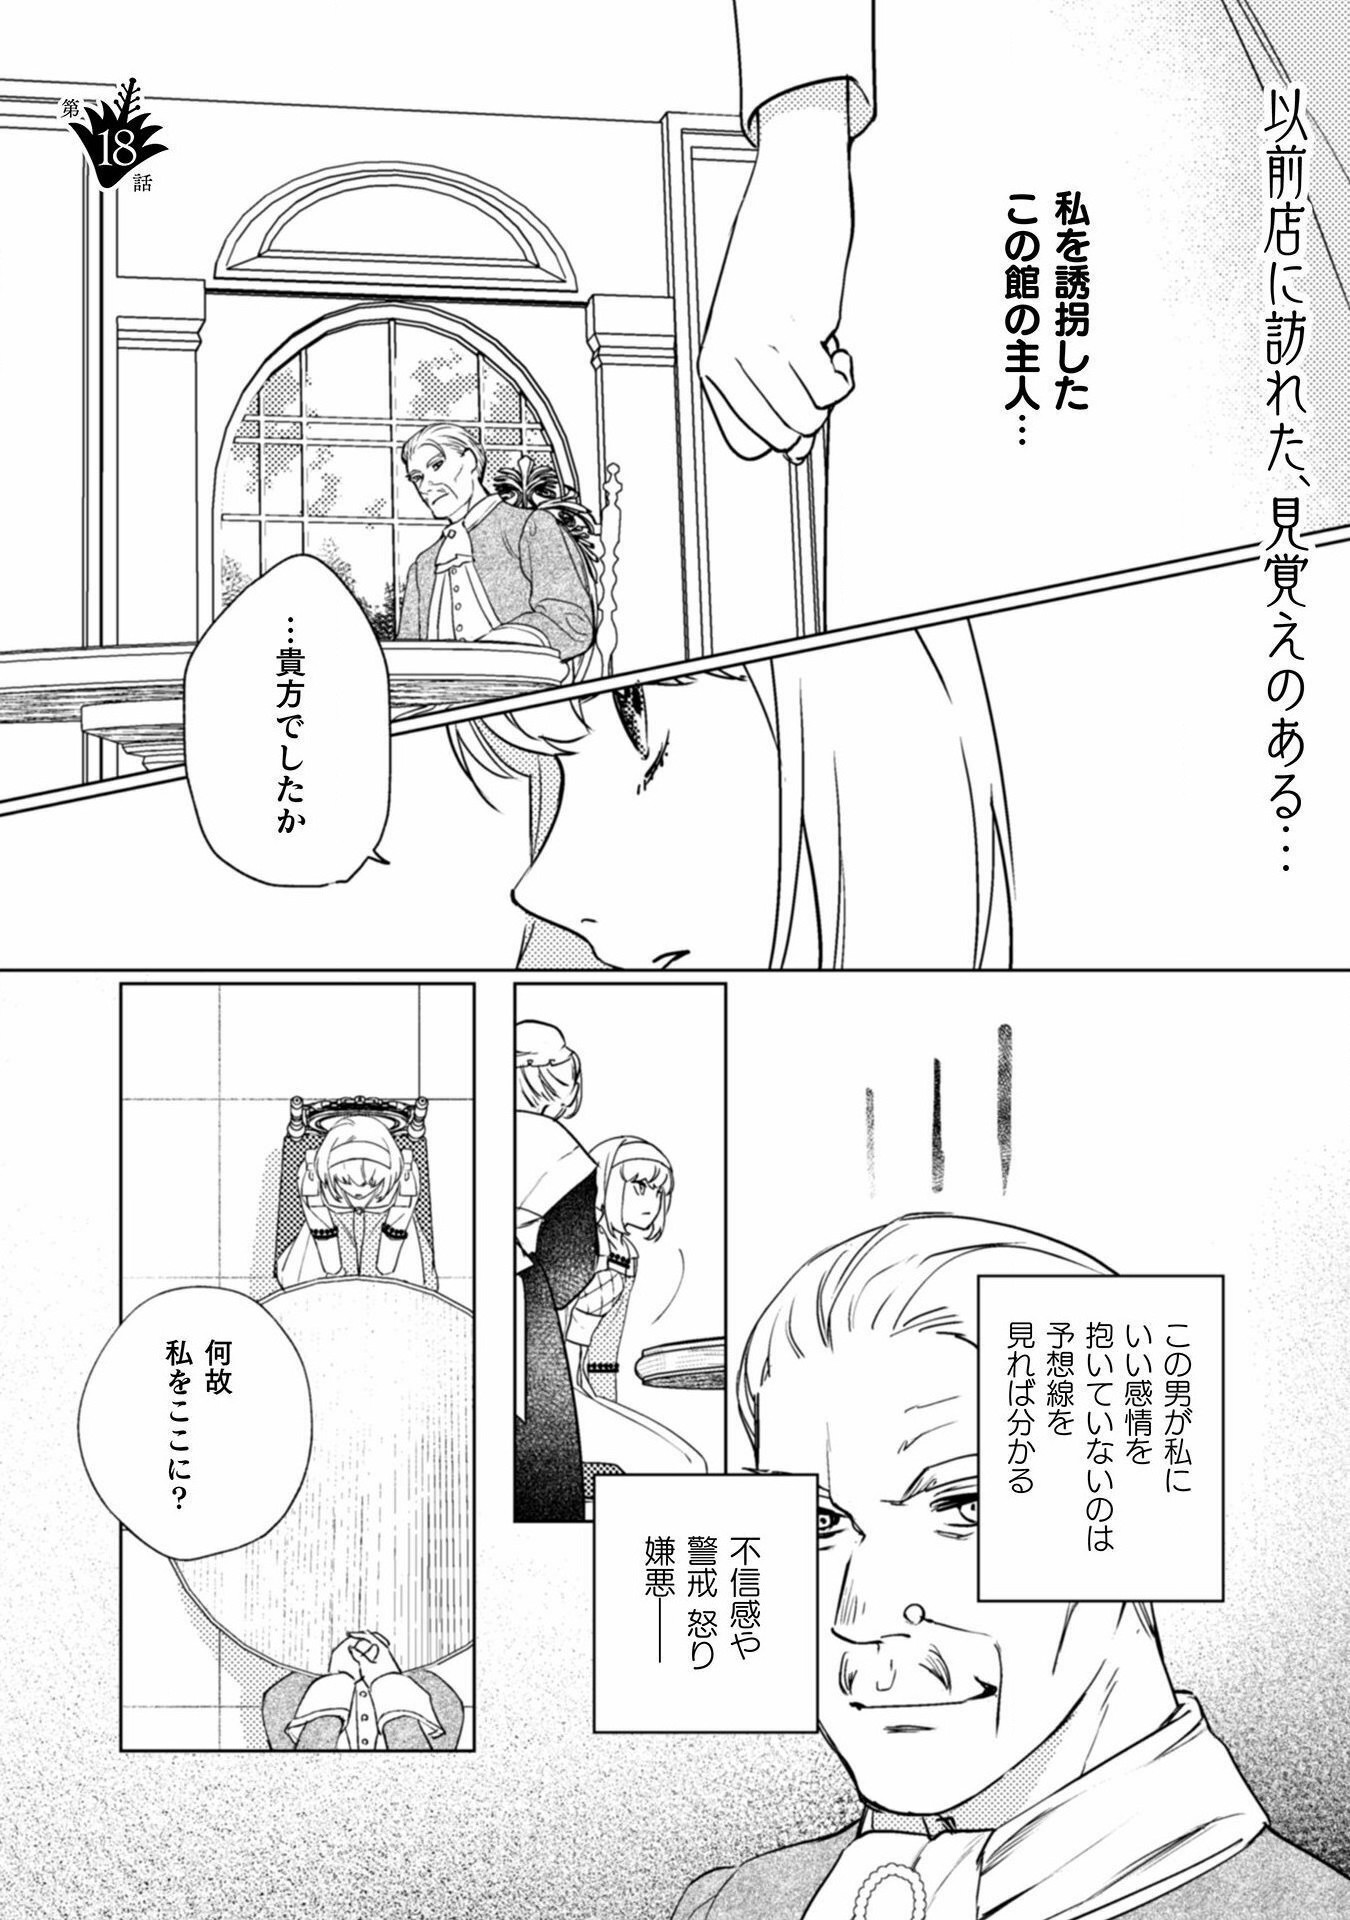 Uranaishi ni wa Hana Kishi no Koigokoro ga Mieteimasu - Chapter 18 - Page 2